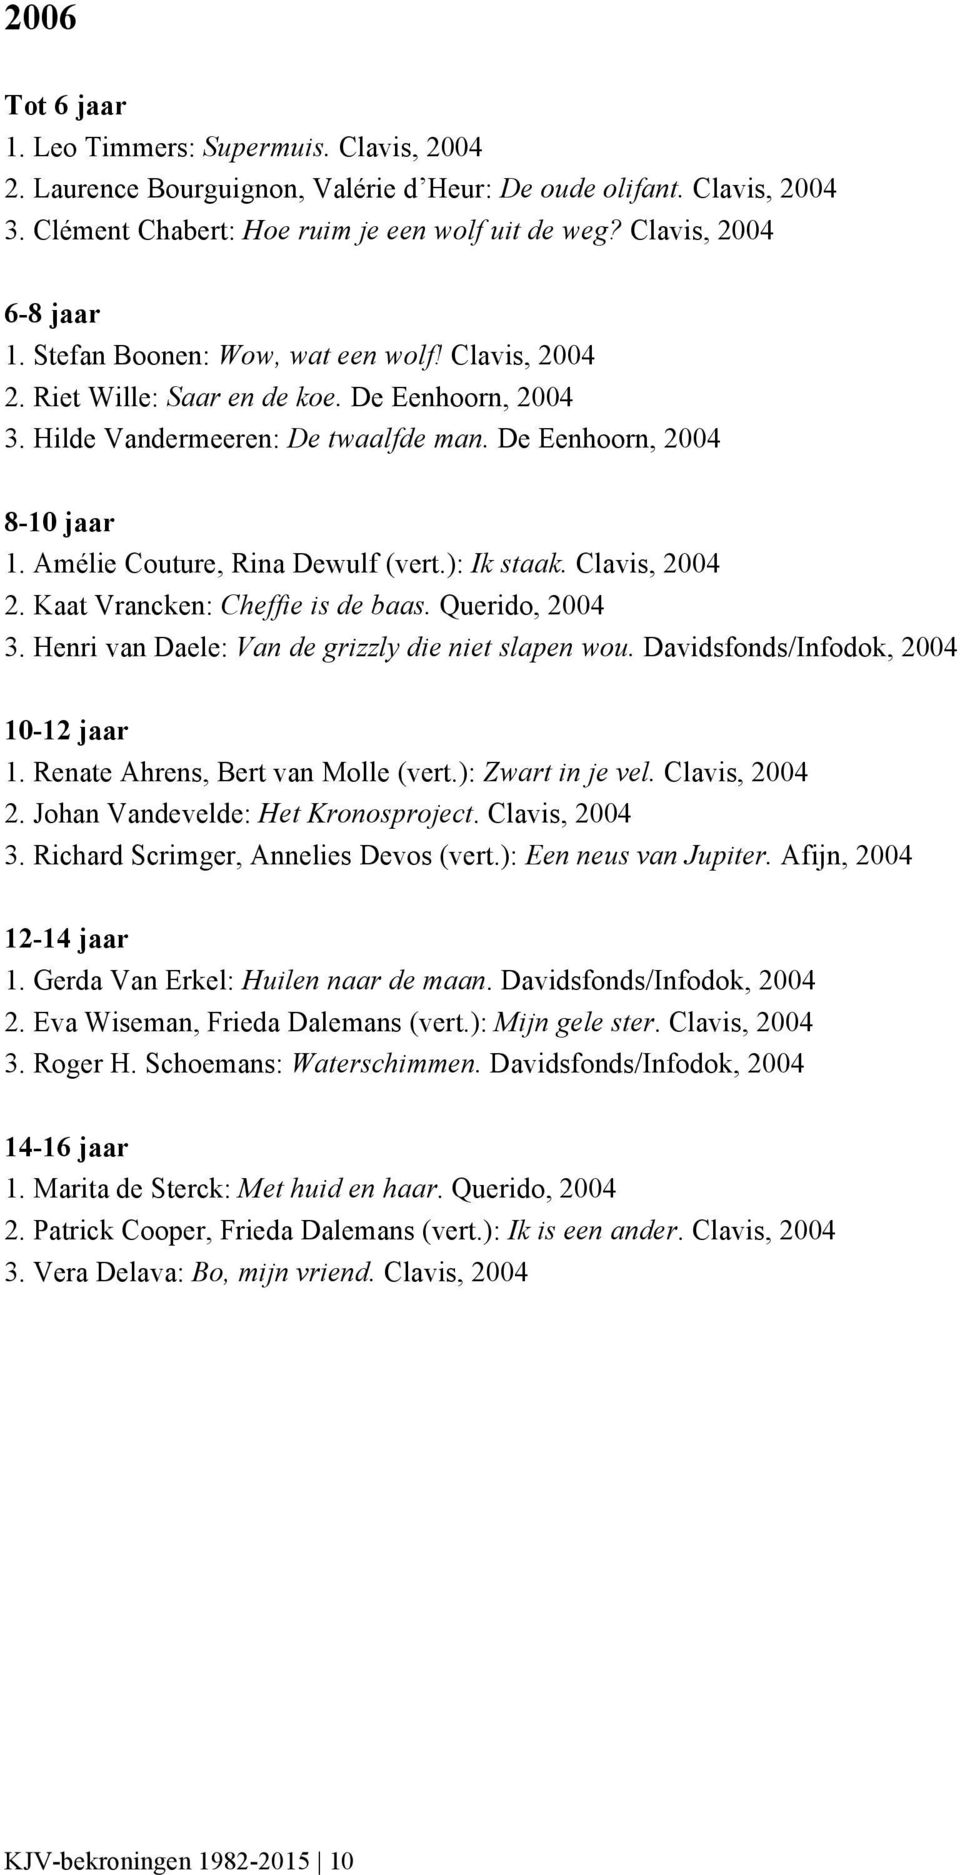 ): Ik staak. Clavis, 2004 2. Kaat Vrancken: Cheffie is de baas. Querido, 2004 3. Henri van Daele: Van de grizzly die niet slapen wou. Davidsfonds/Infodok, 2004 1. Renate Ahrens, Bert van Molle (vert.